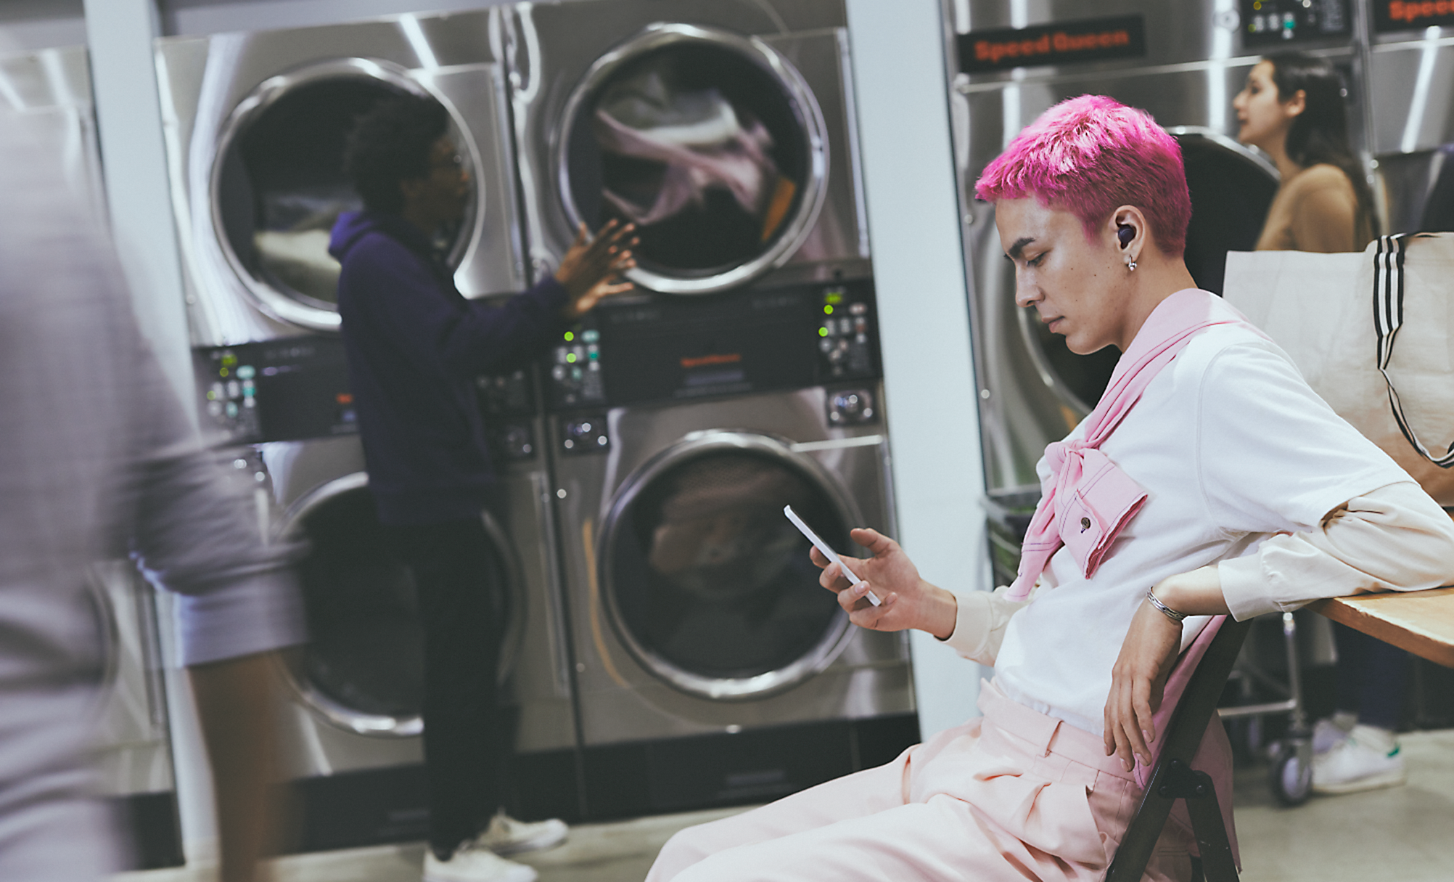 Abbildung einer Person, die im Waschsalon sitzt, auf ihr Smartphone schaut und WF-C700N kabellose Noise Cancelling-Kopfhörer trägt